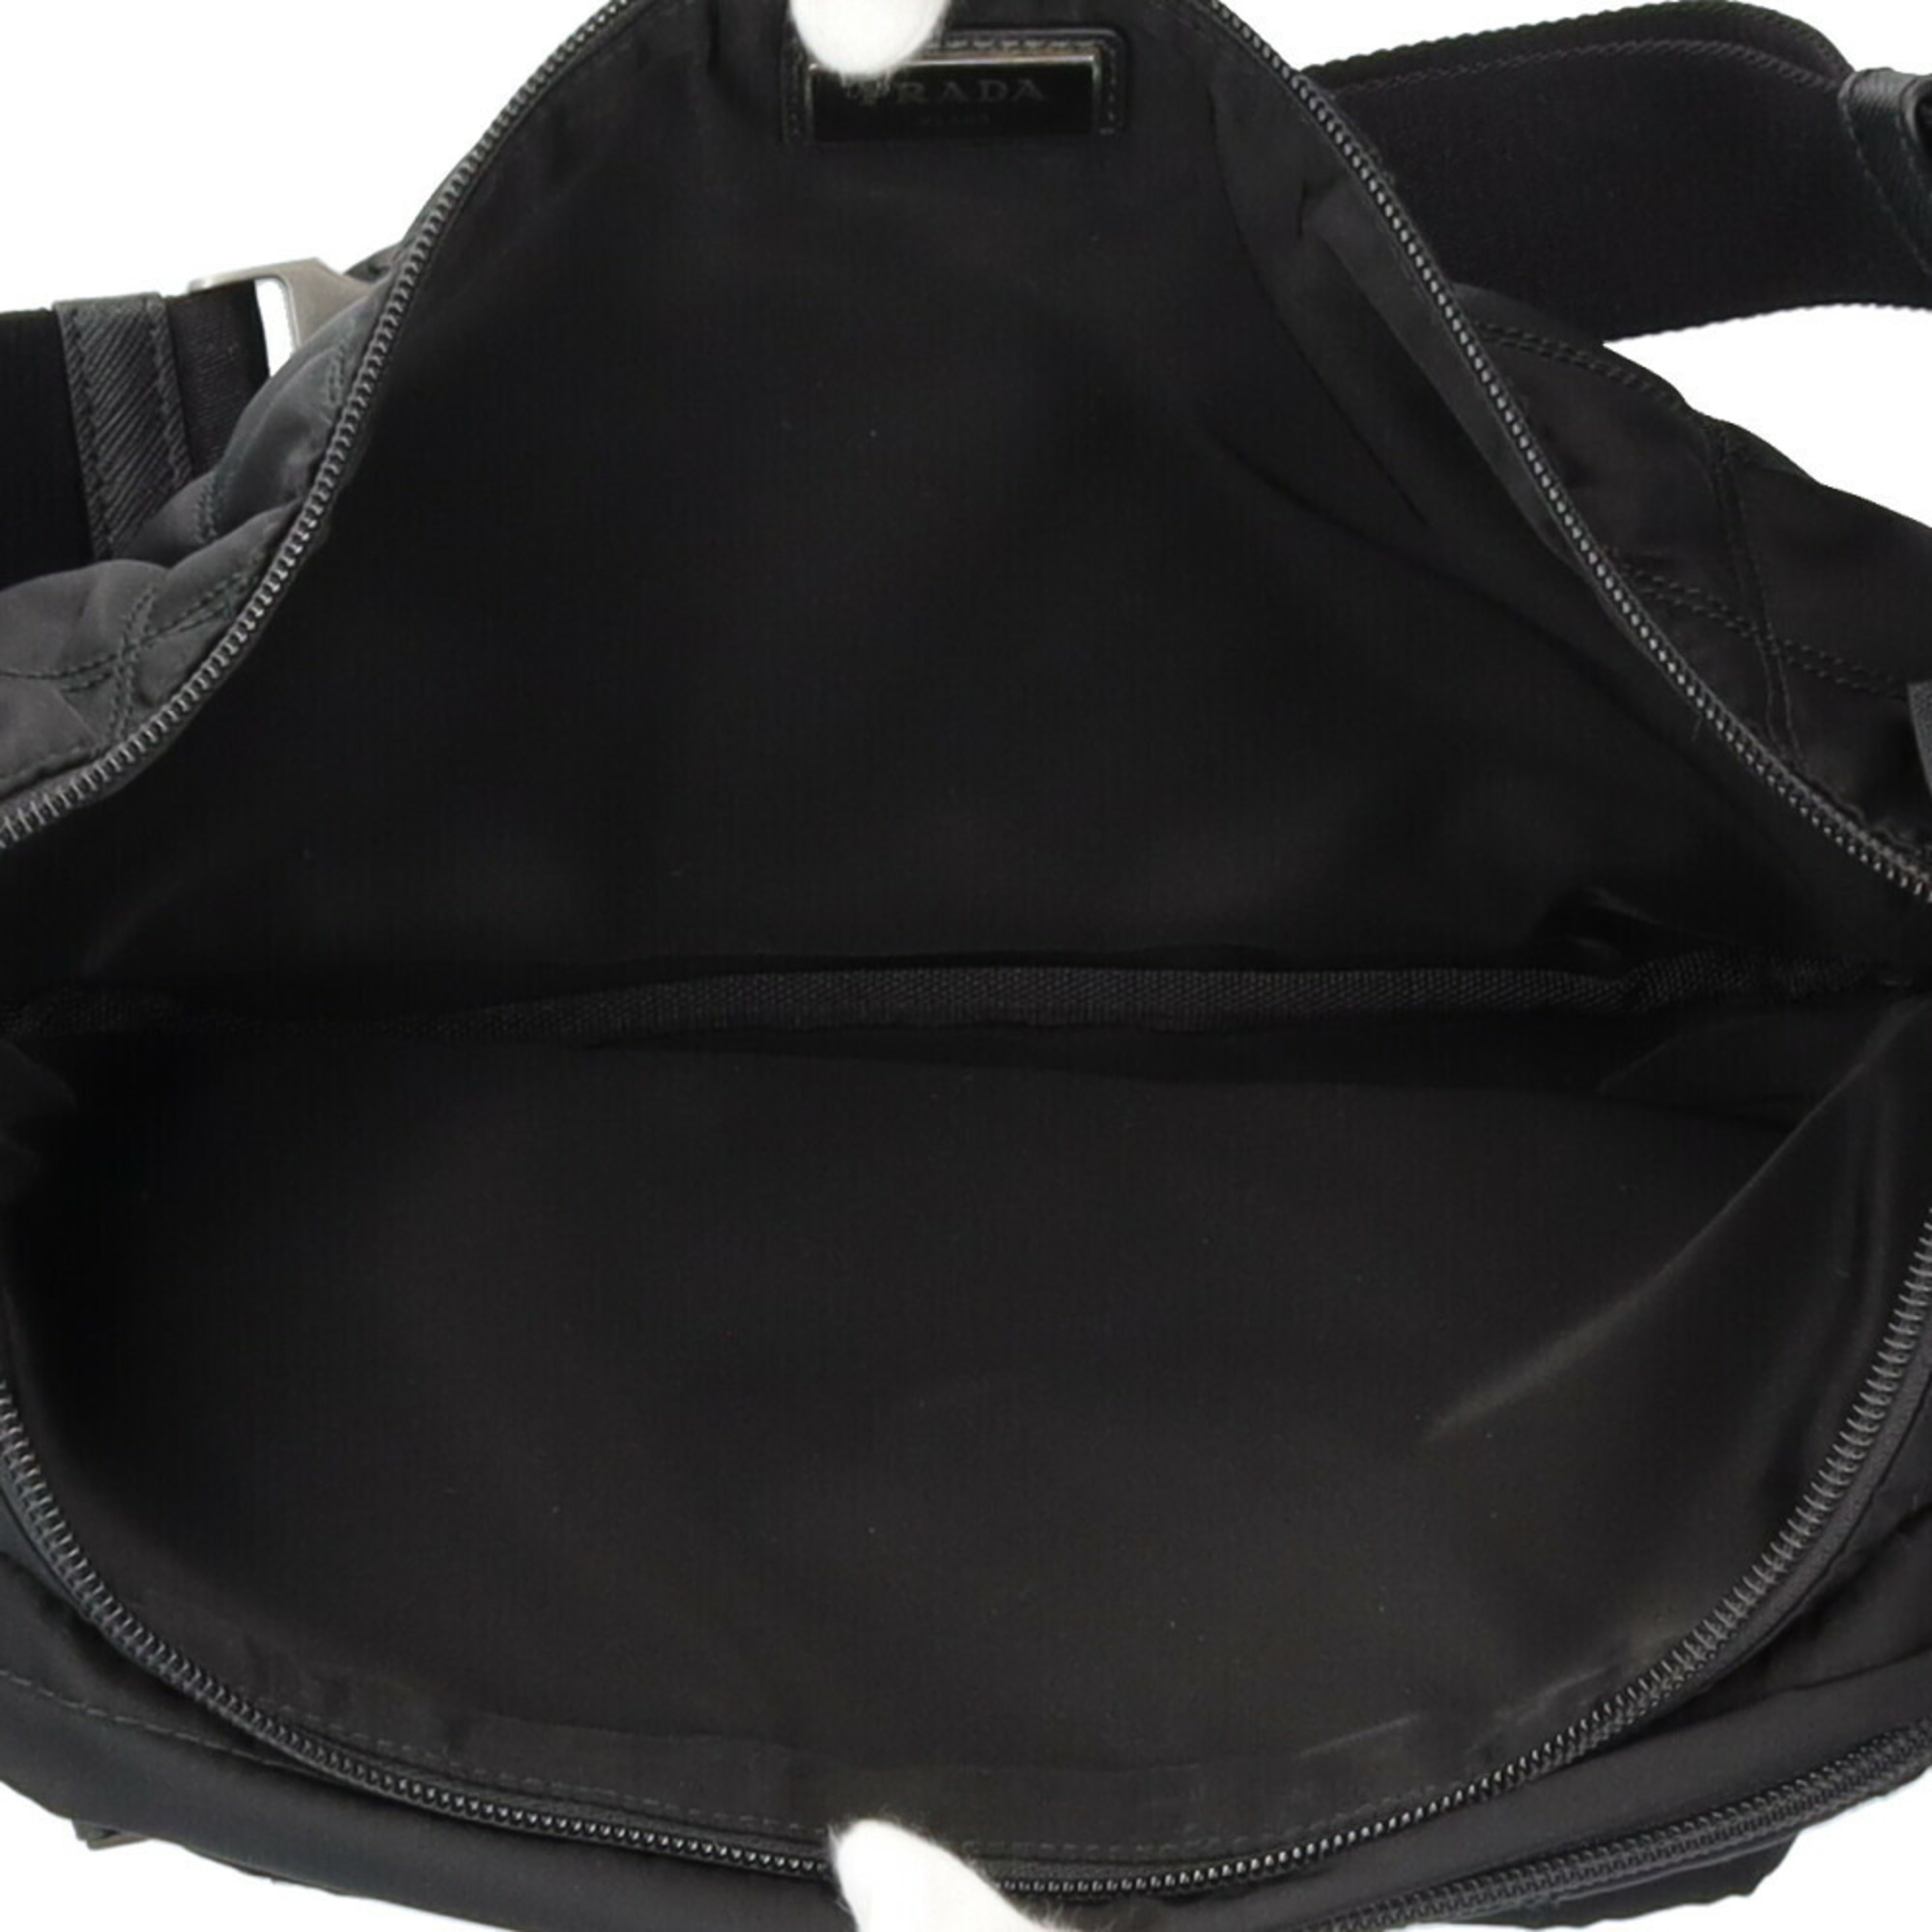 Prada Body Bag Nylon 2VL003 Black Women's PRADA